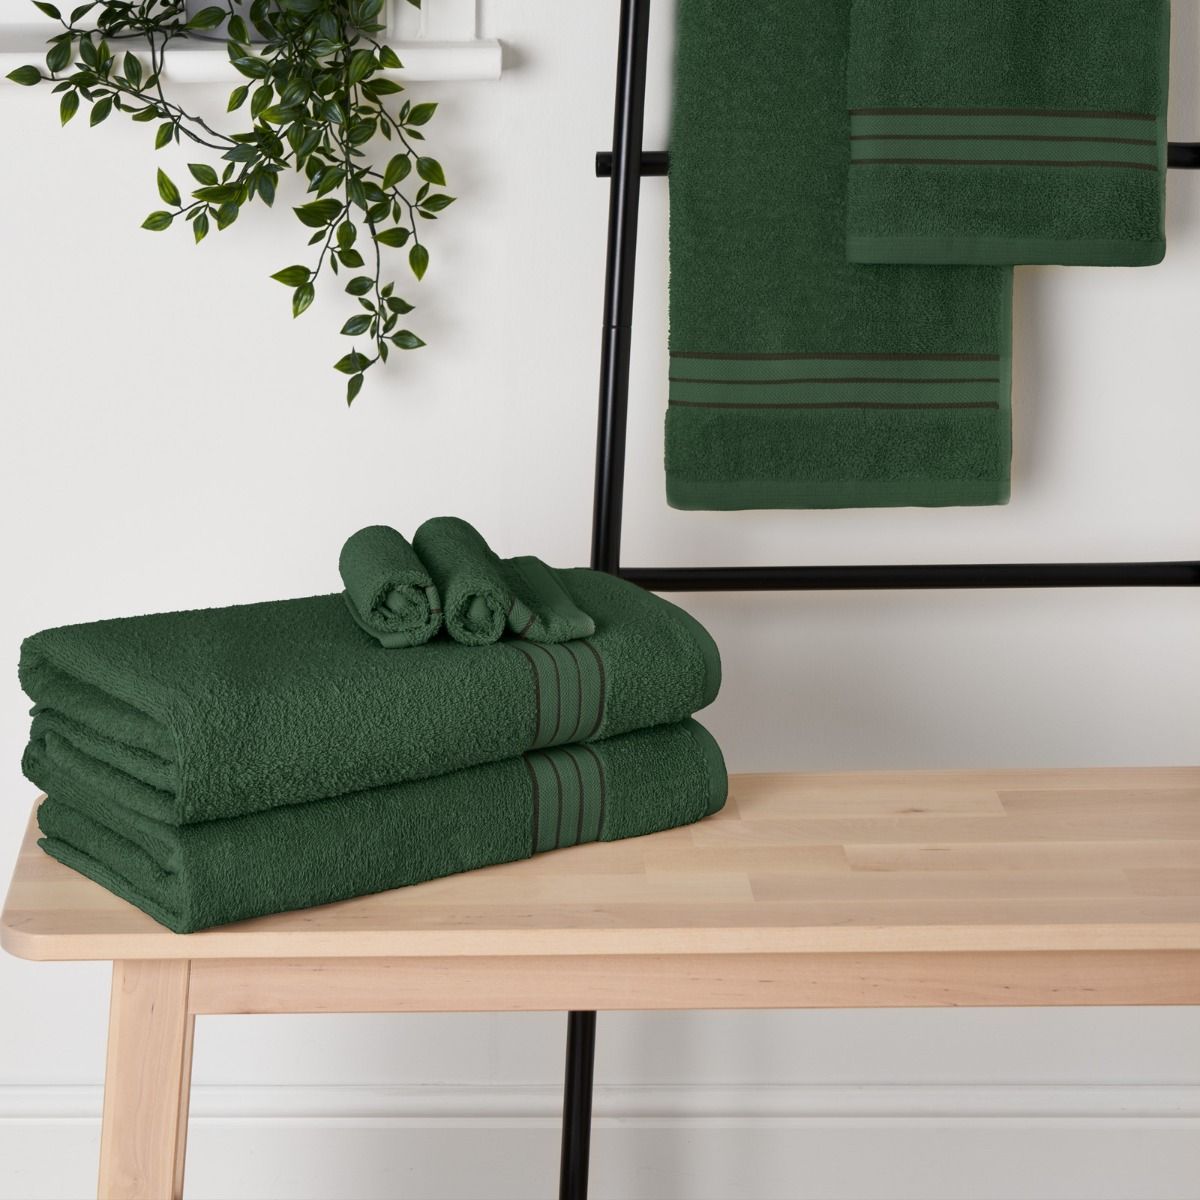 Brentfords 100% Cotton Bath Sheet, Forest Green - 1PC